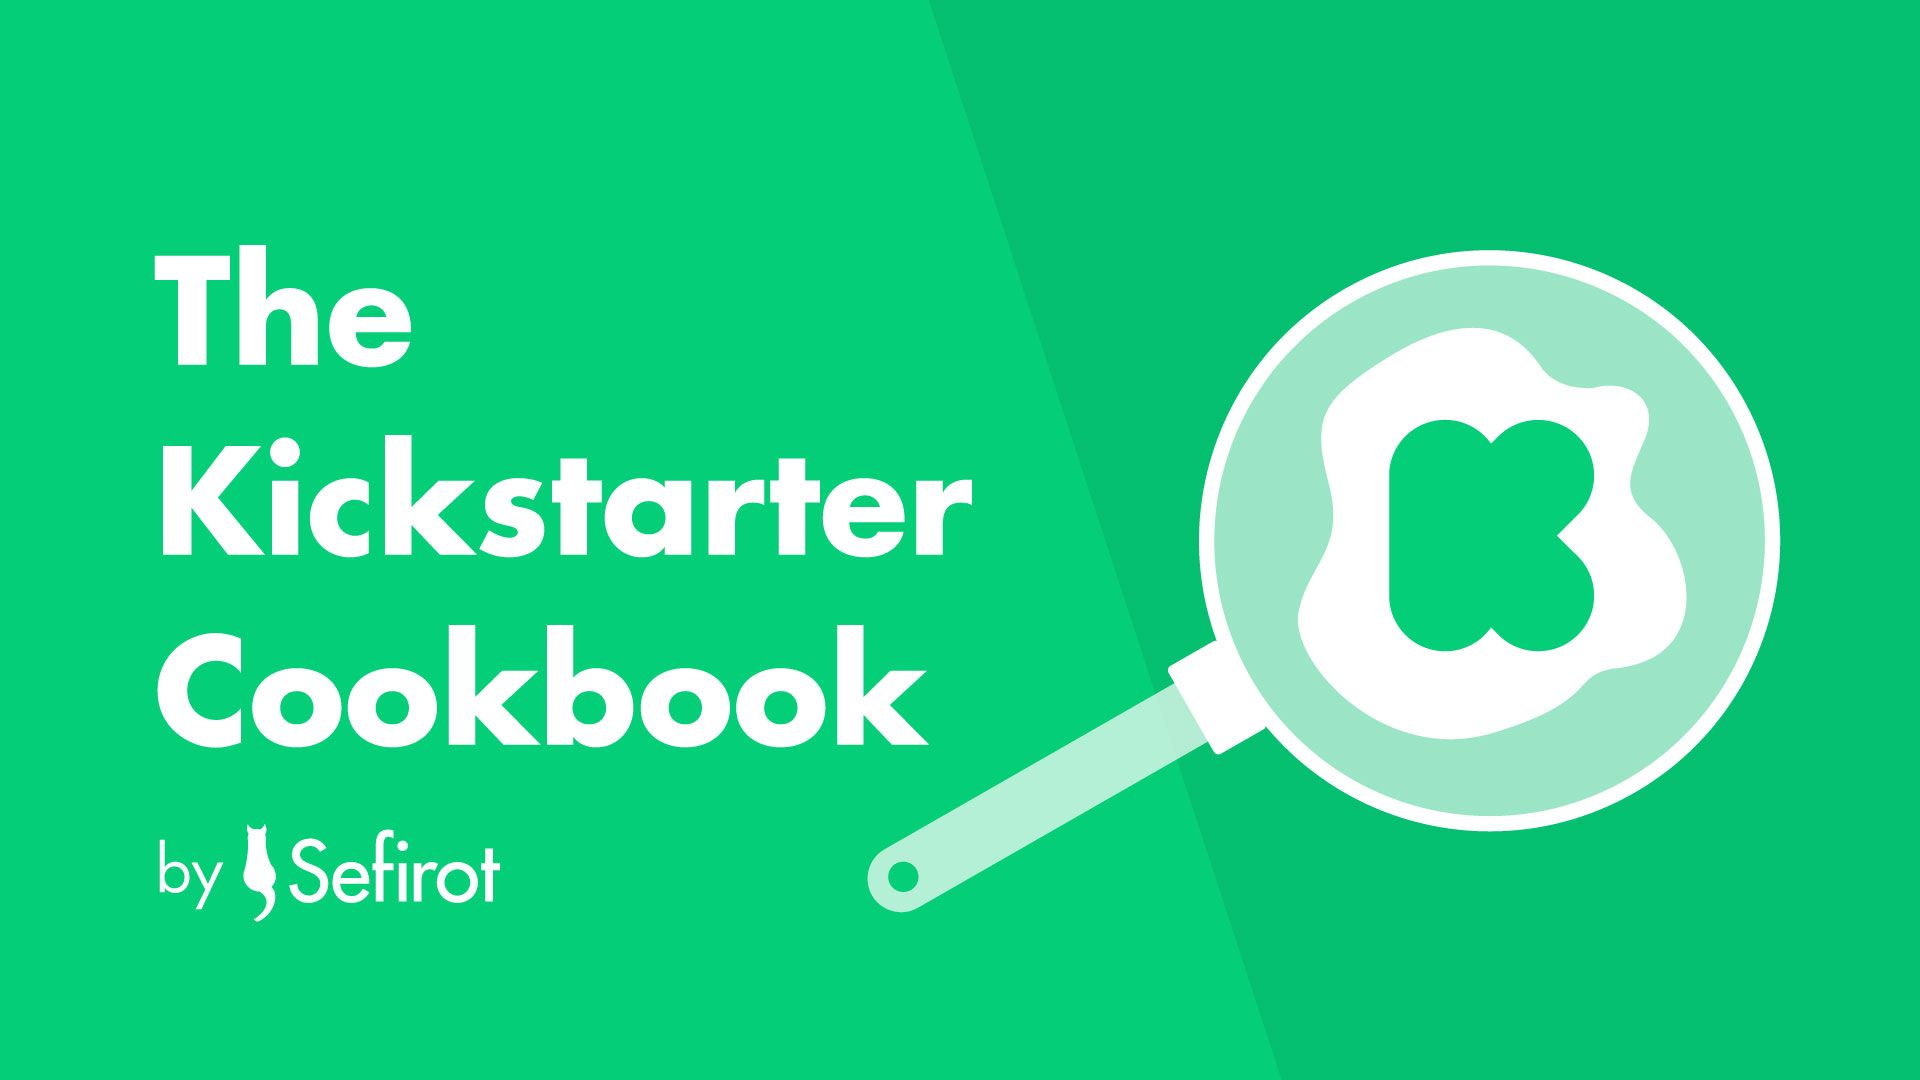 The Kickstarter Cookbook